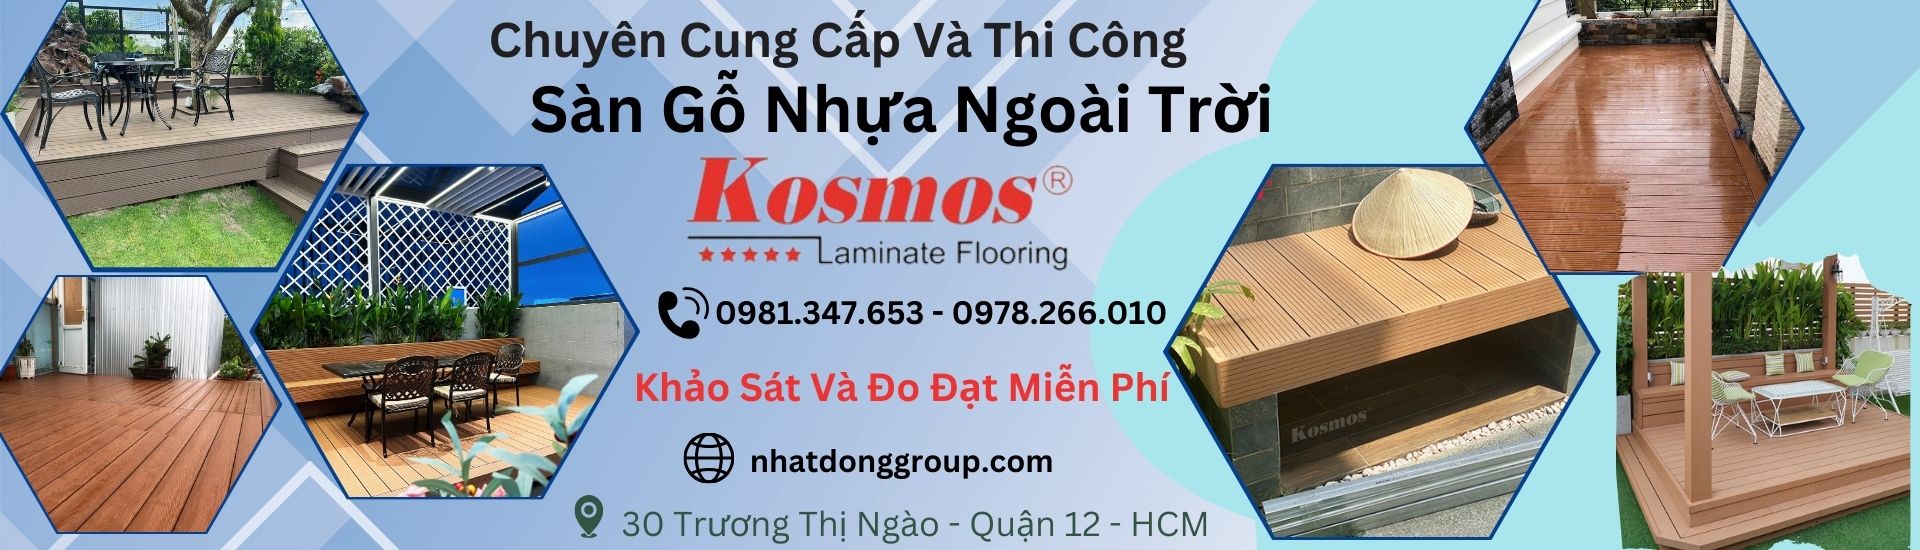 Sàn gỗ nhựa ngoài trời Kosmos đẹp, chính hãng Tại Hồ Chí Minh,Long An , Bình Dương, Đồng Nai, Cần Thơ, Bạc Liêu